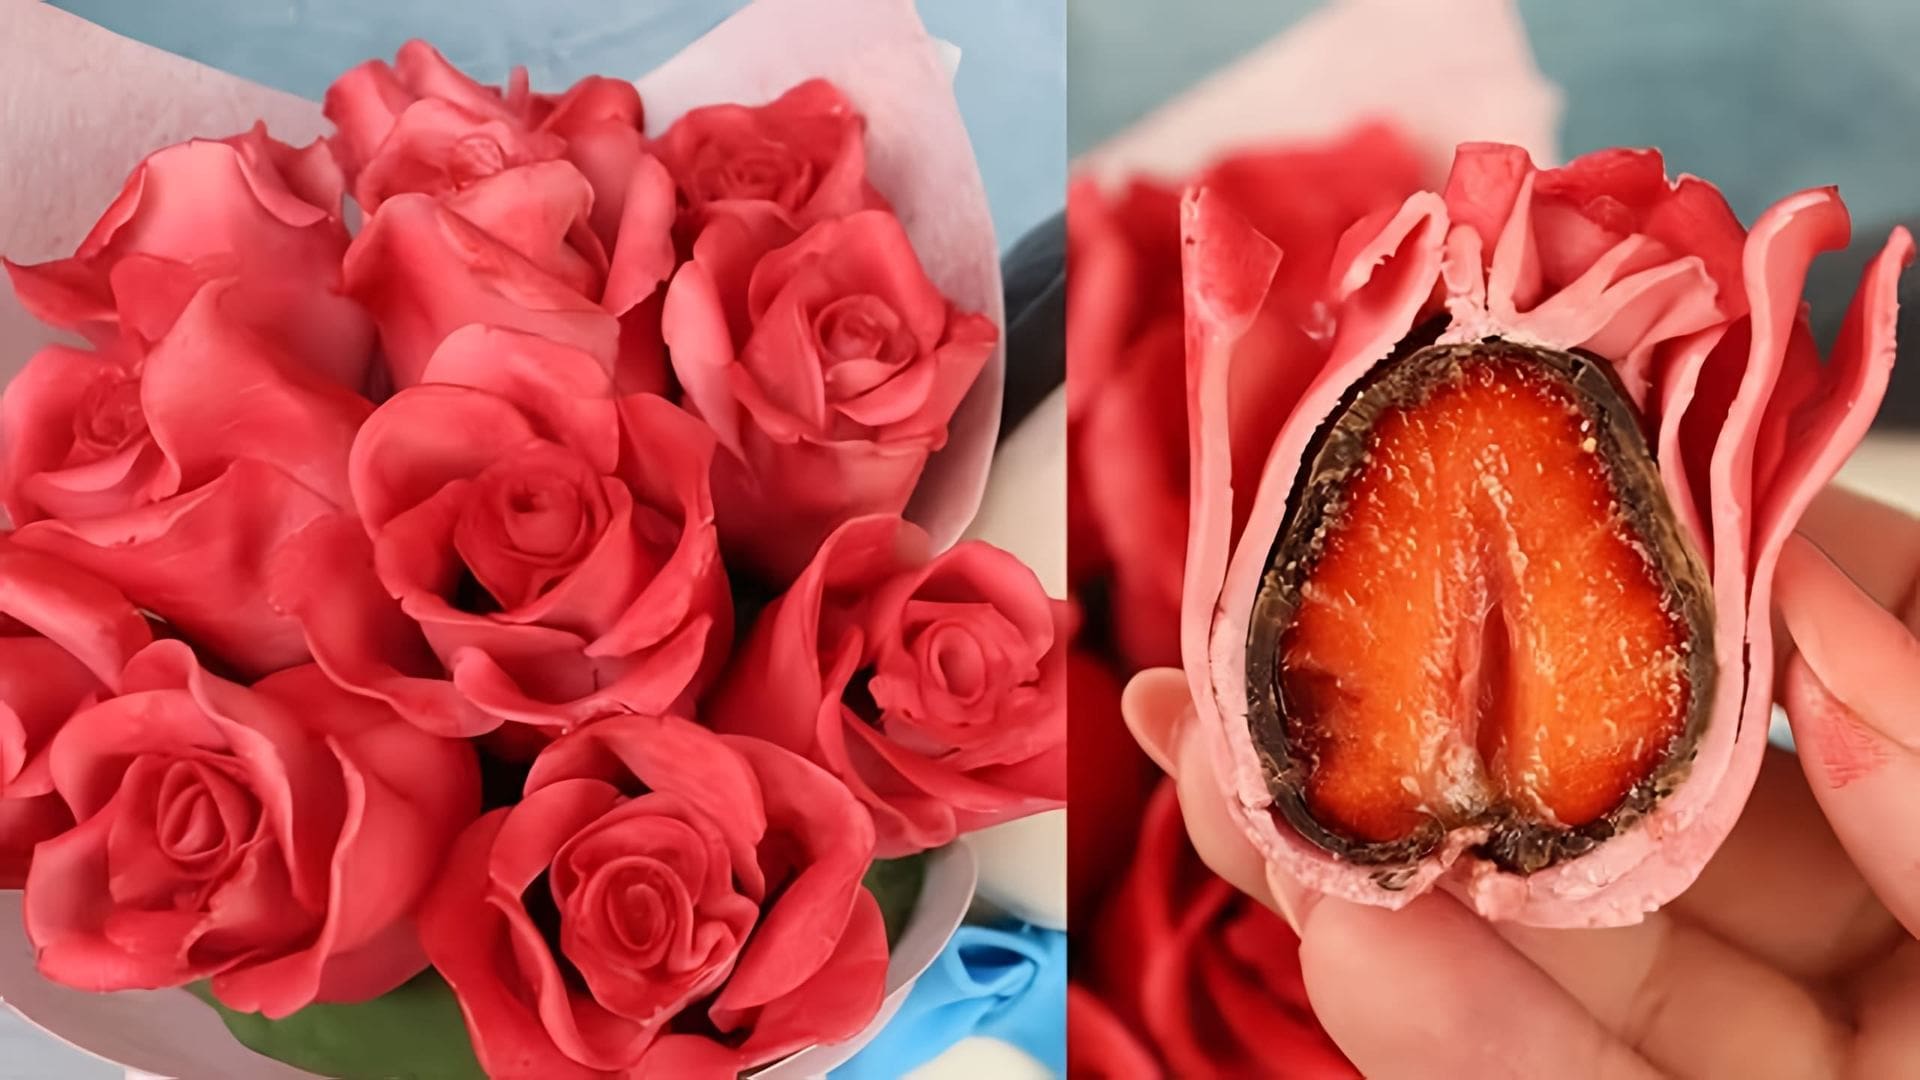 В этом видео демонстрируется процесс создания съедобных цветов из клубники и шоколада для украшения торта